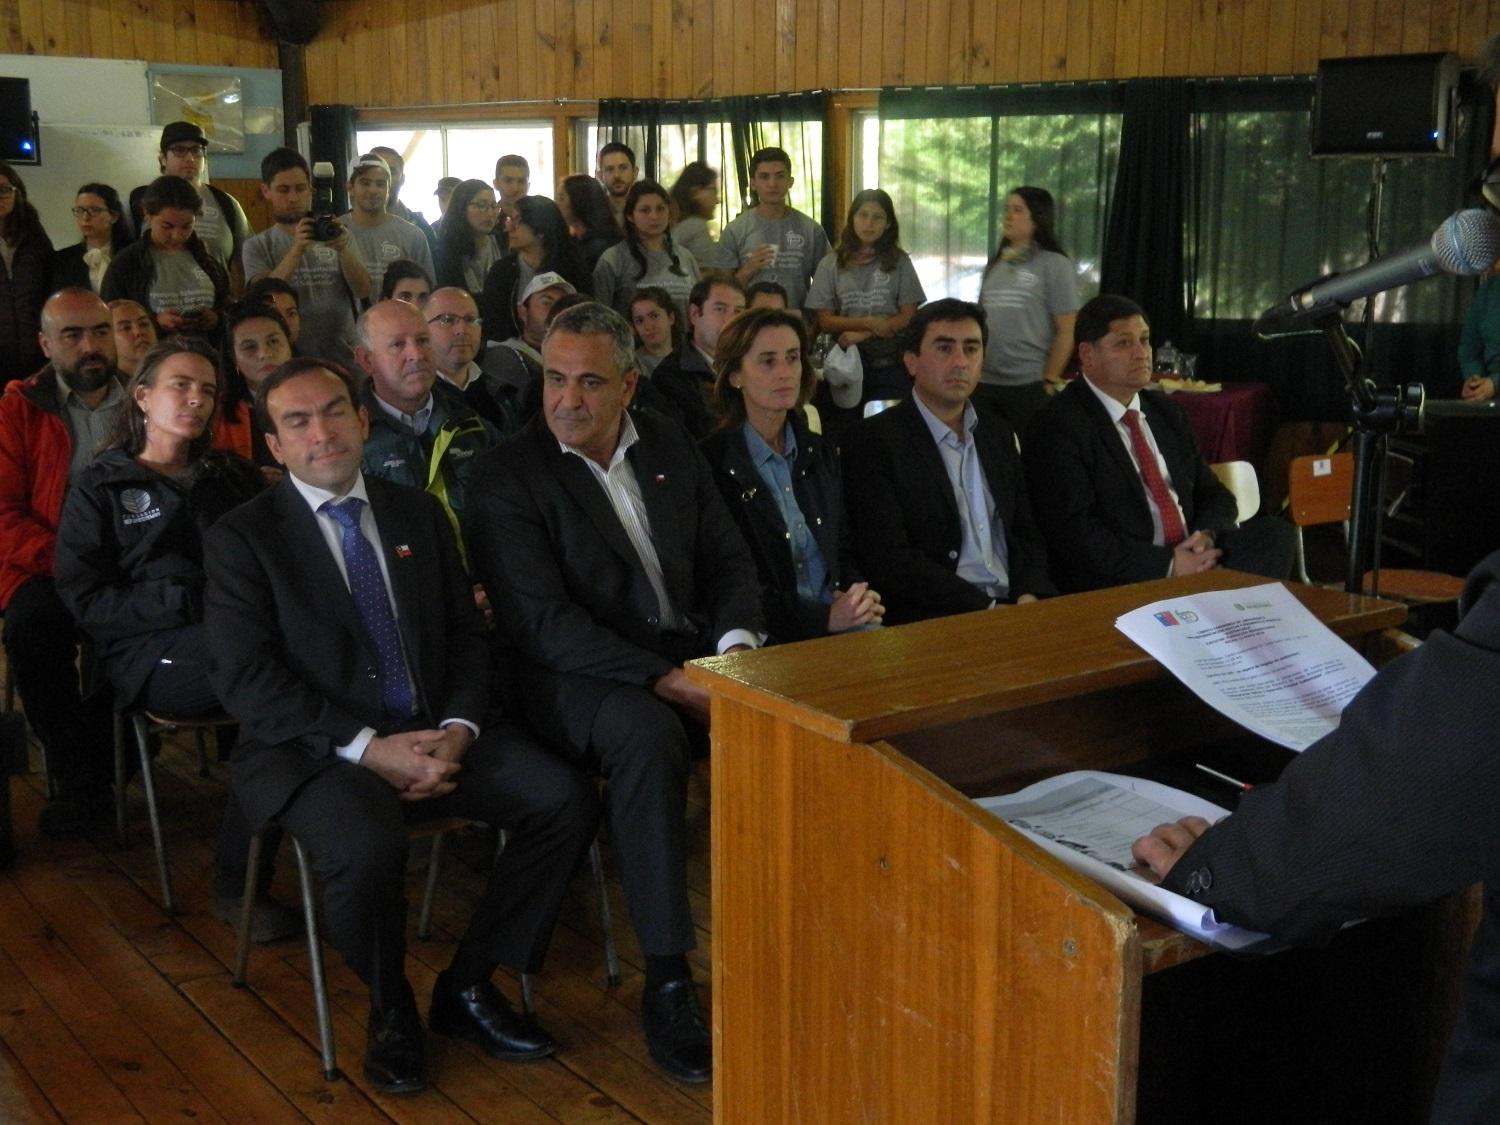 La ceremonia se realizó en el Centro Experimental de la U. de Chile, participaron los alcaldes de Constitución y Empedrado, la Ministra de Medio Ambiente, la Decana de la Facultad.